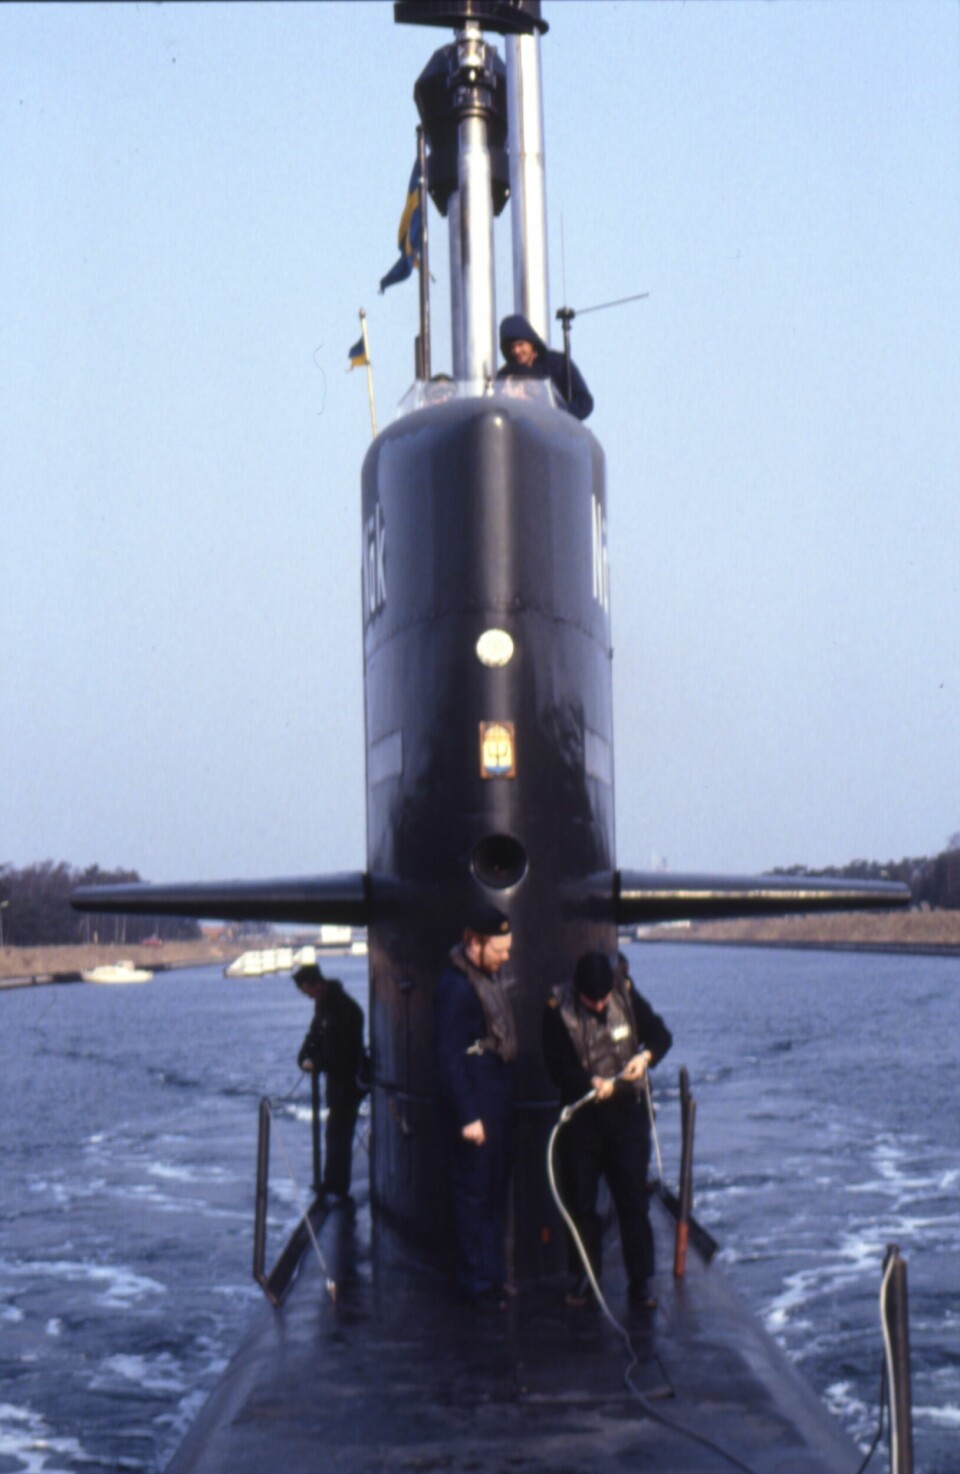 HMS Näcken halvtidsmodifierades 1988 och försågs då med två stirlingmotorer. Det var den första svenska ubåt som försågs med Air Independent Propulsion, vilket gjorde den mycket mer tystgående än konventionella ubåtar.